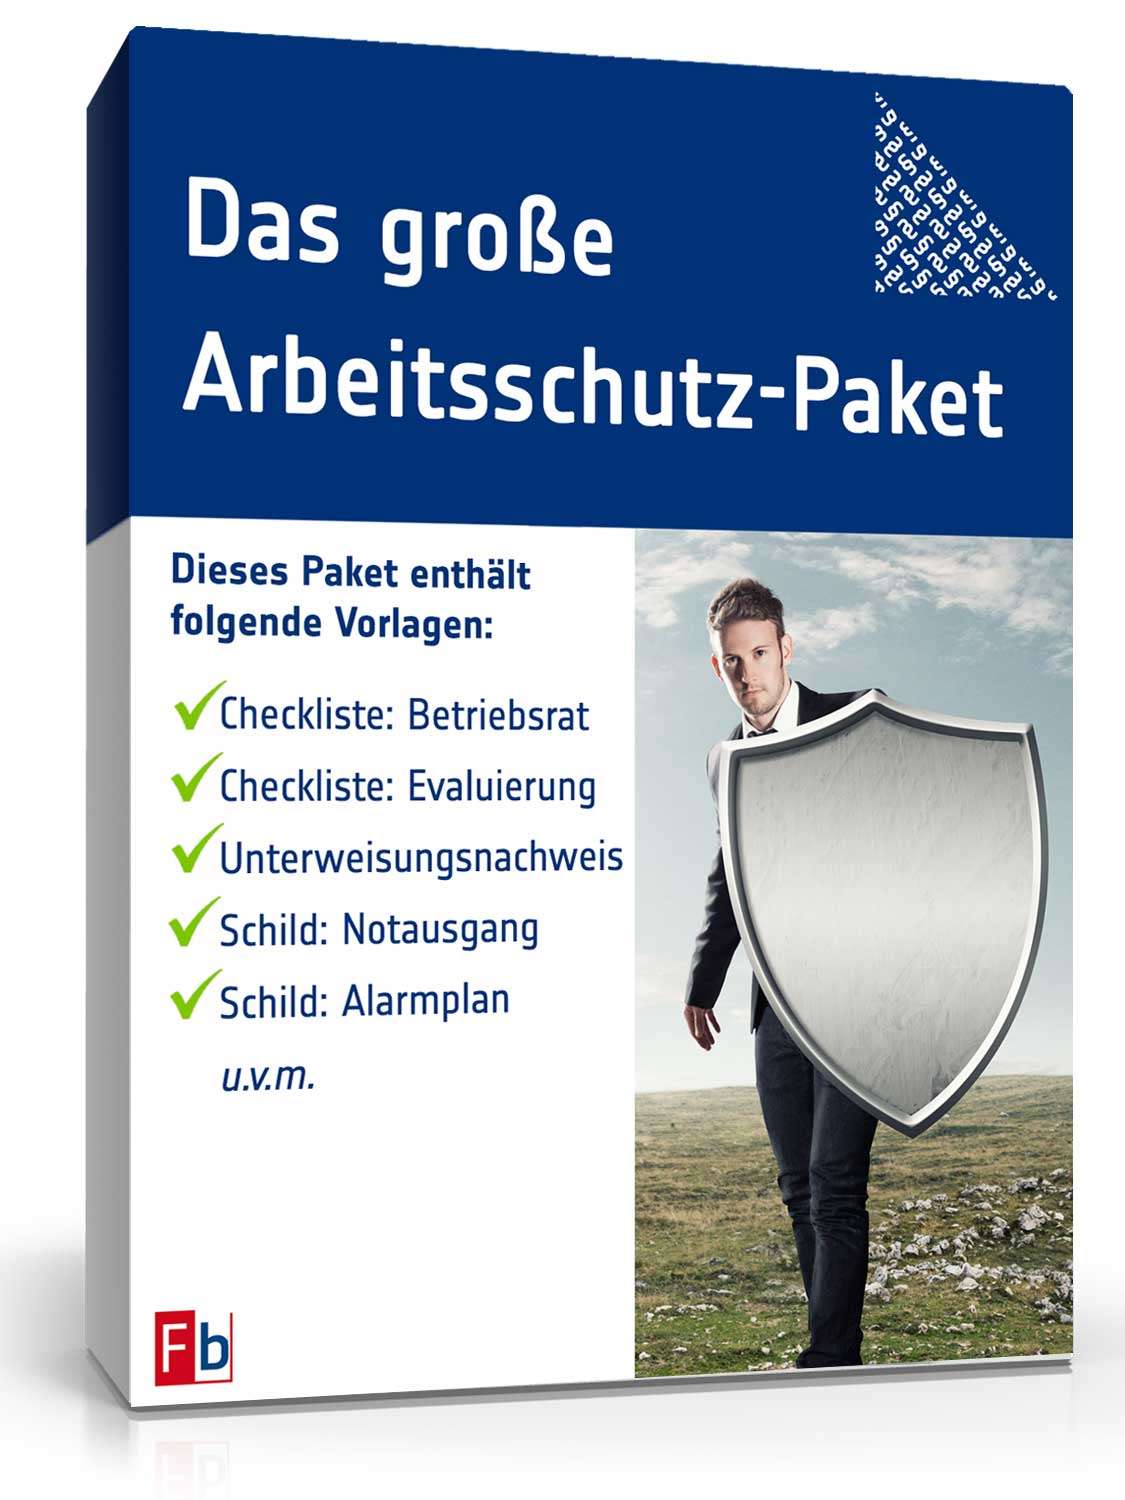 Hauptbild des Produkts: Das große Arbeitsschutz-Paket